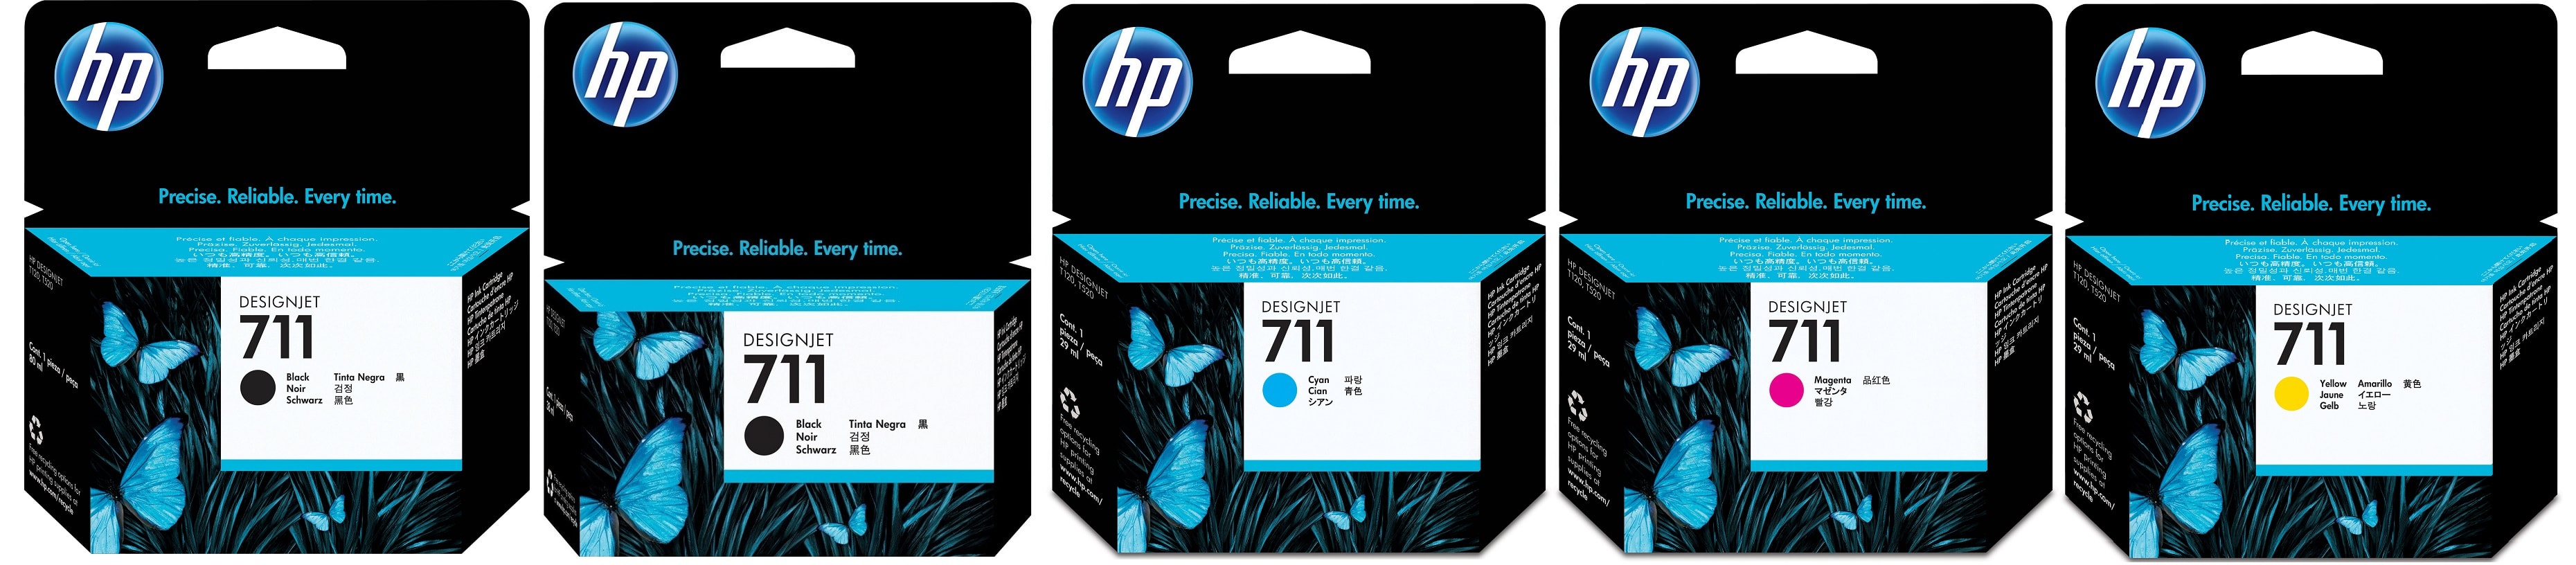 Картриджи hp 711 для HP HP Designjet T130. Купить комплект оригинальных картриджей.